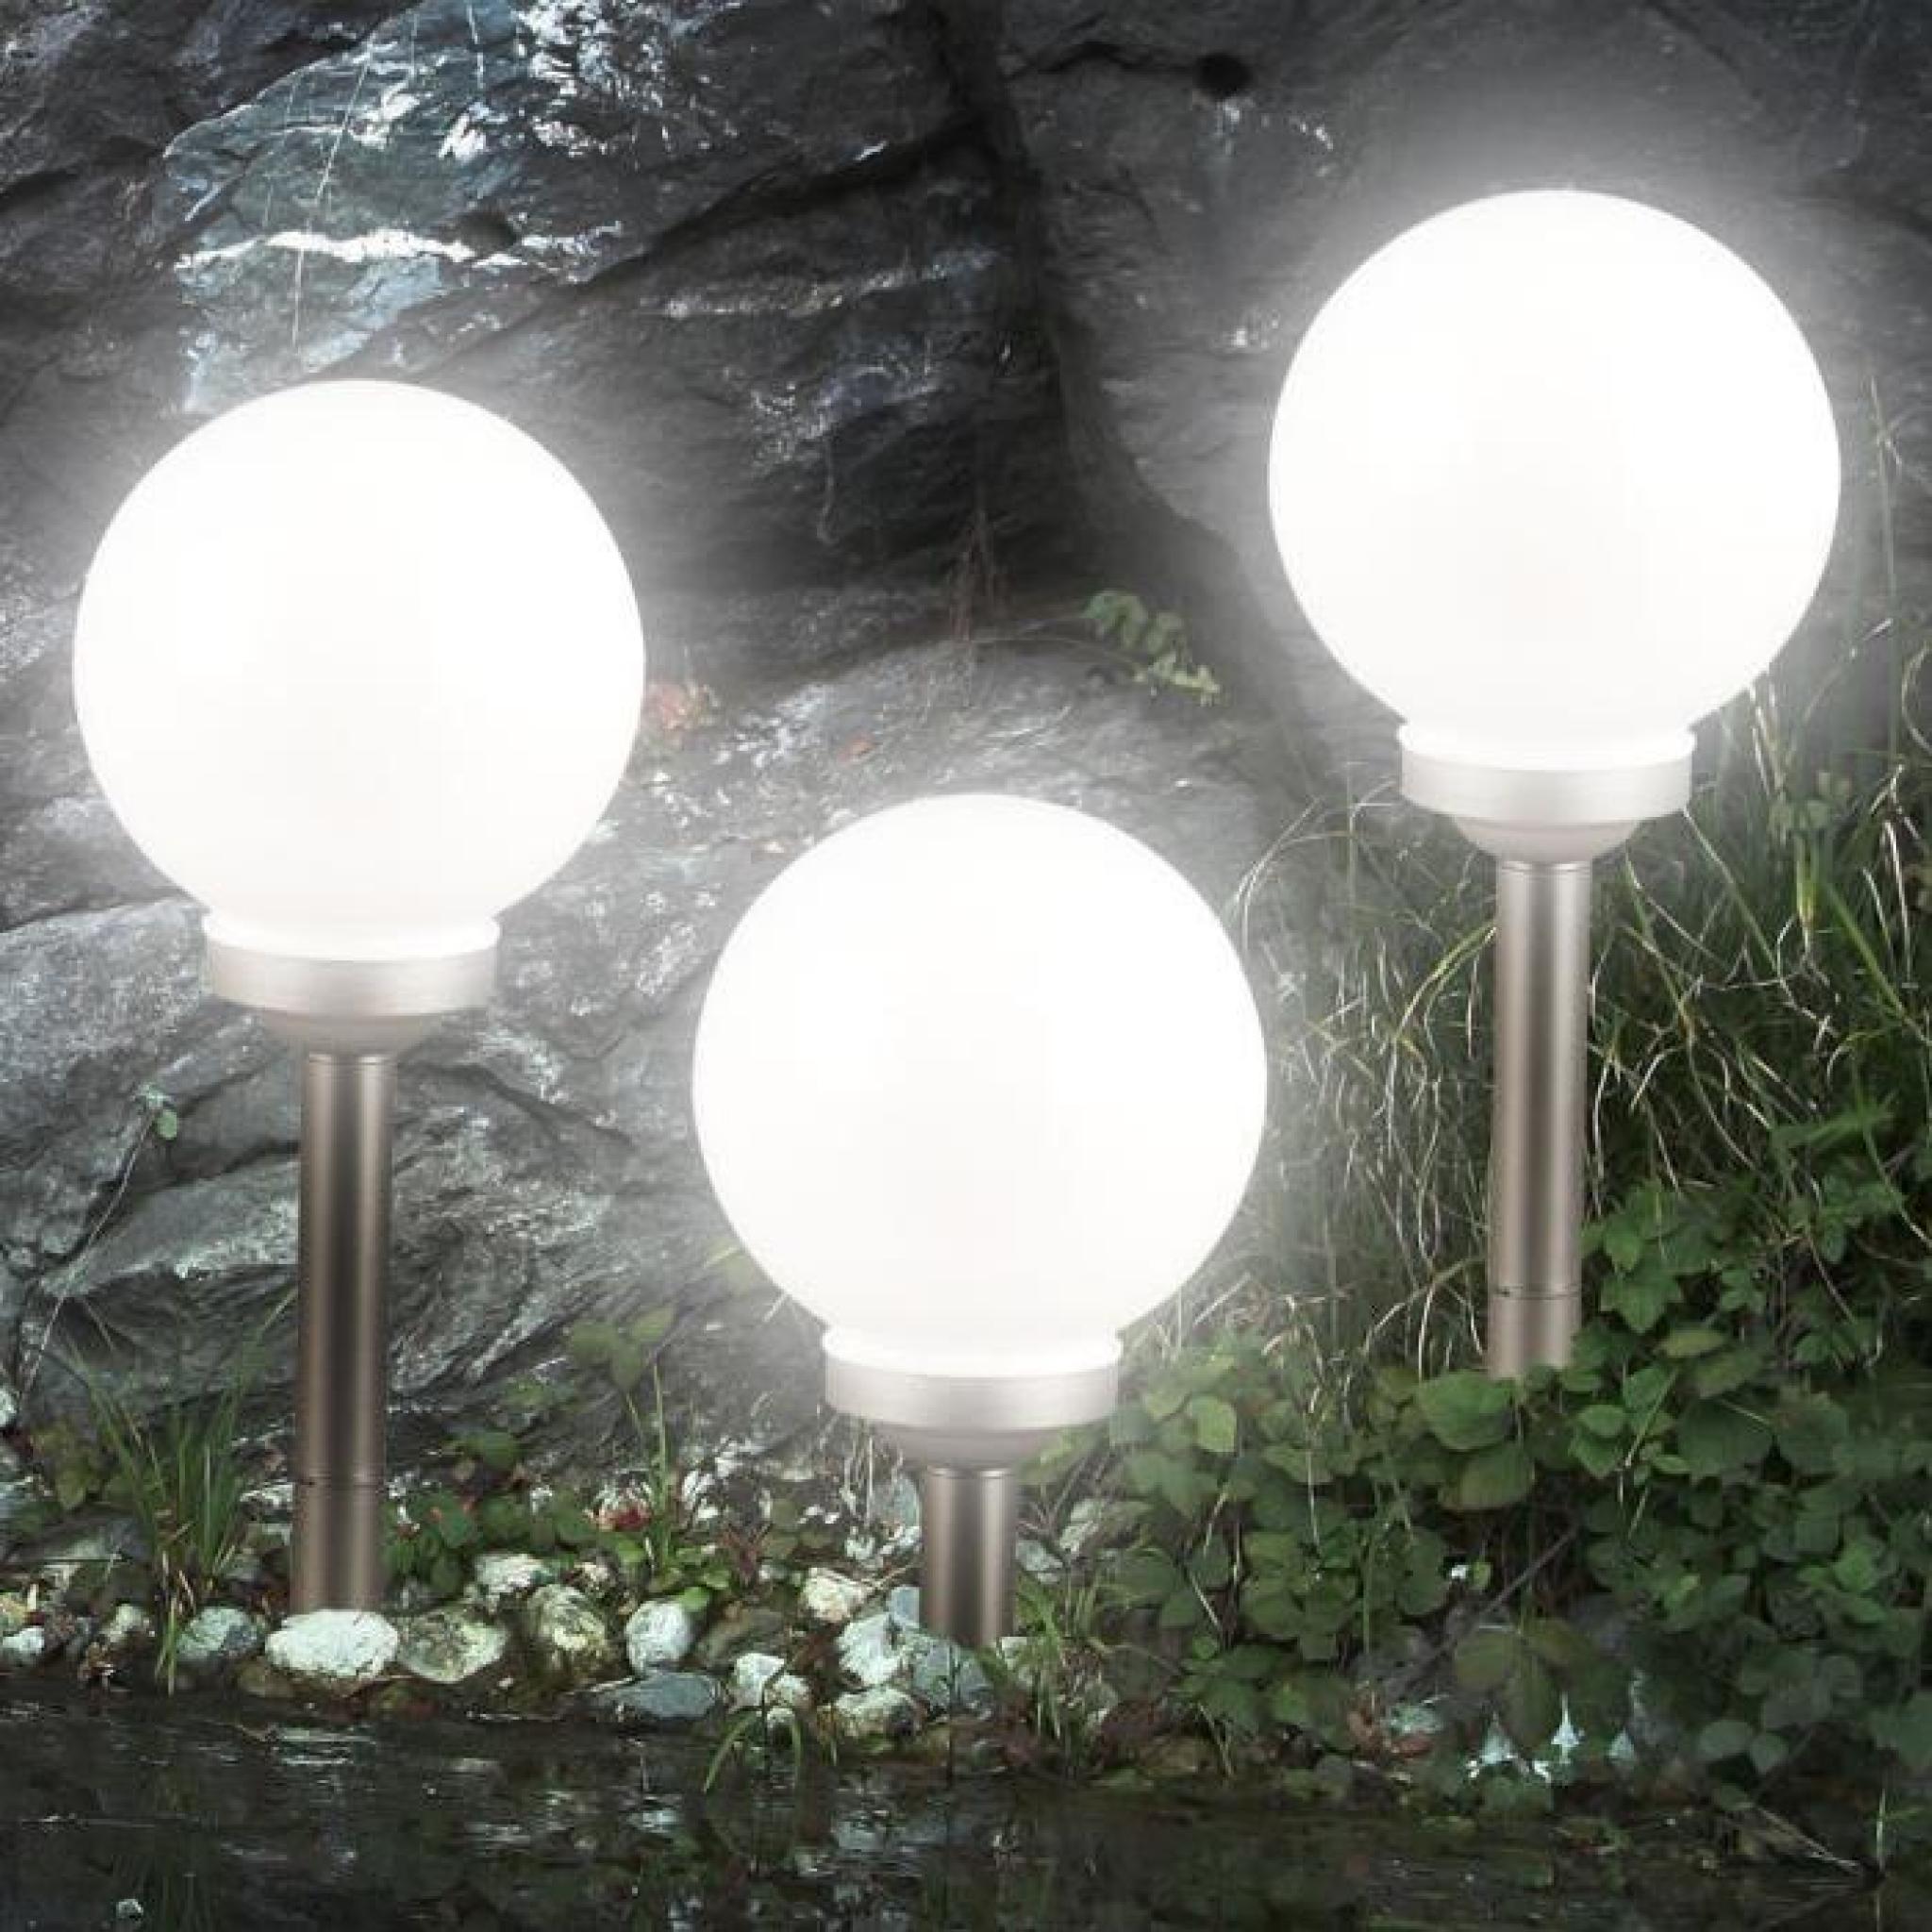 Solaire LED Lanterne Jardin Luminaire Extérieur Balcon Table Lampe